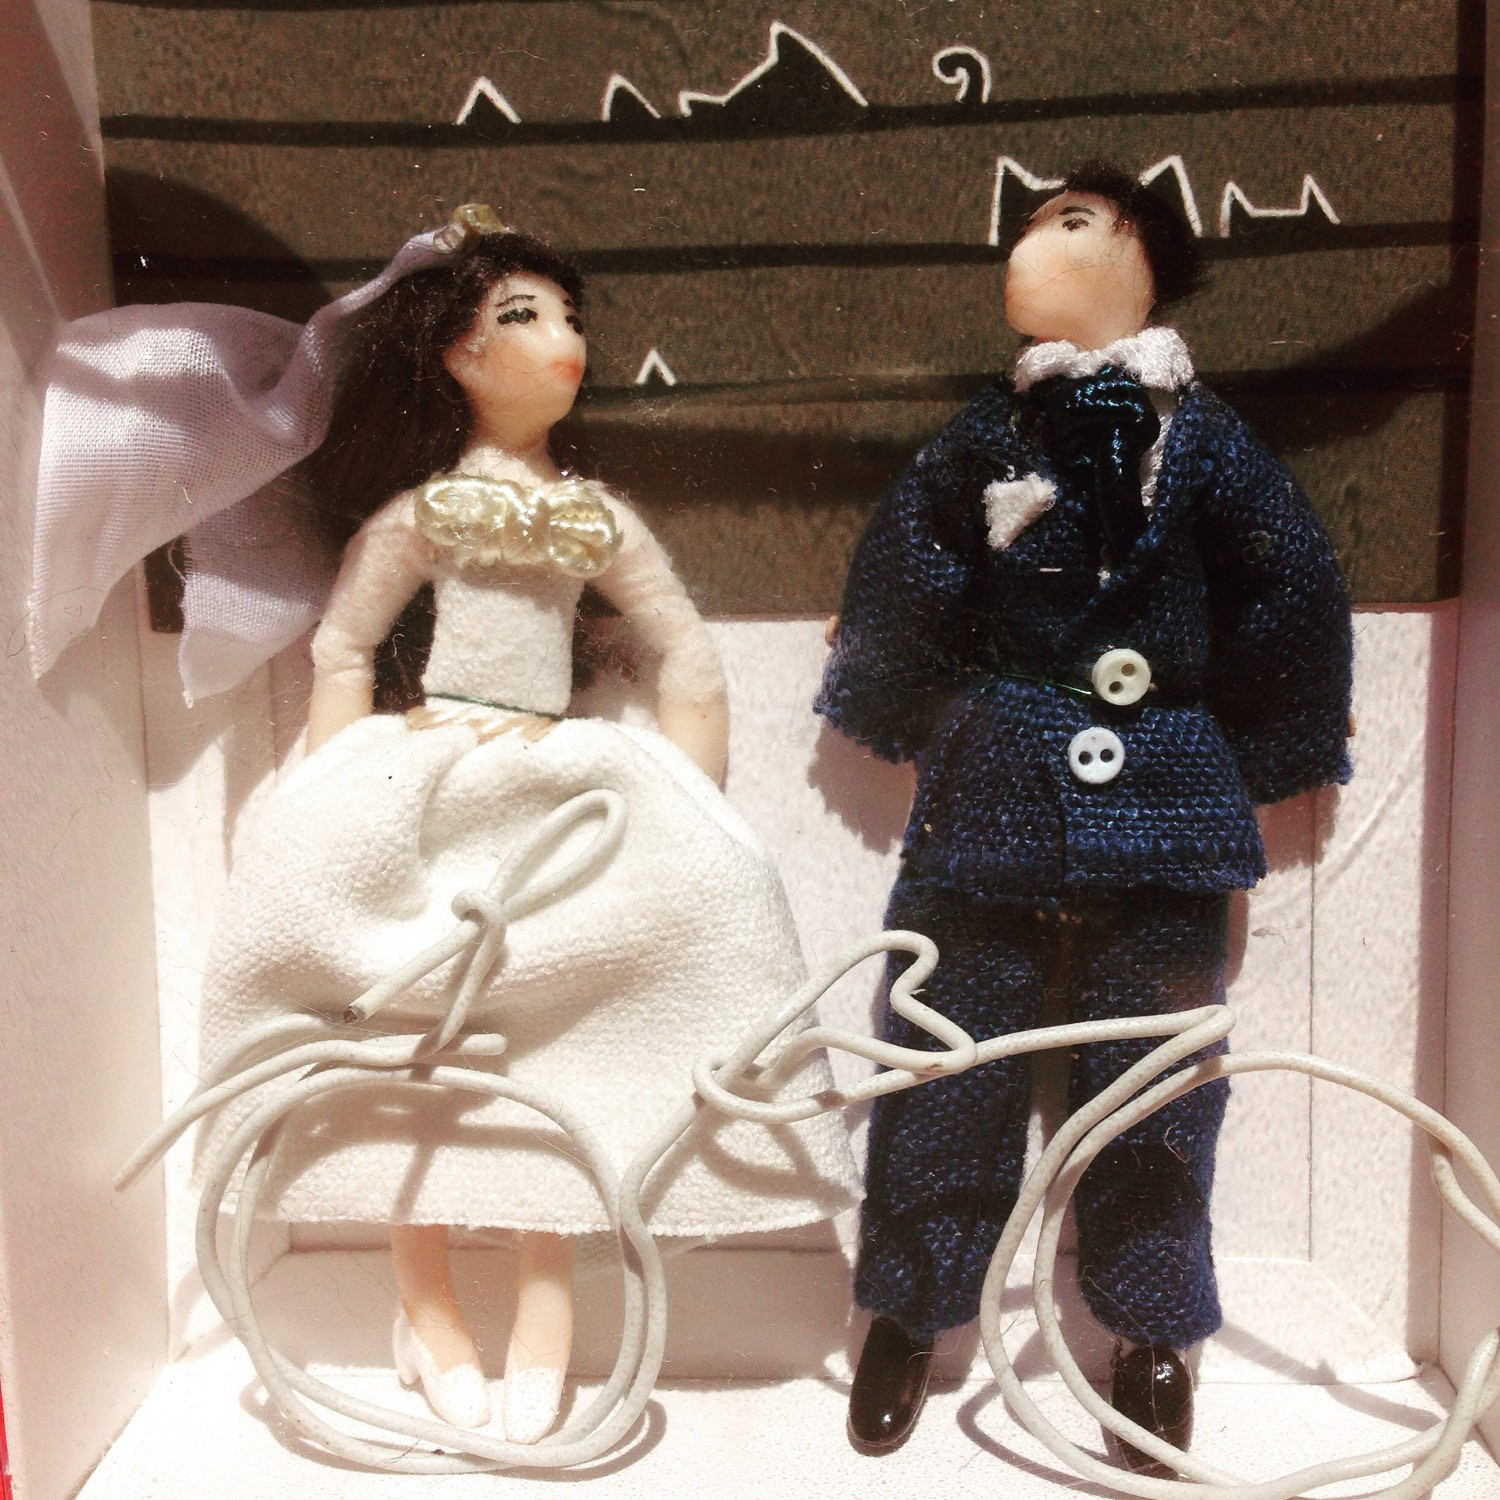 Hochzeit Kuchen
 Hochzeit Kuchen Spitzenwerken Puppen Stoyries Ed und Mila